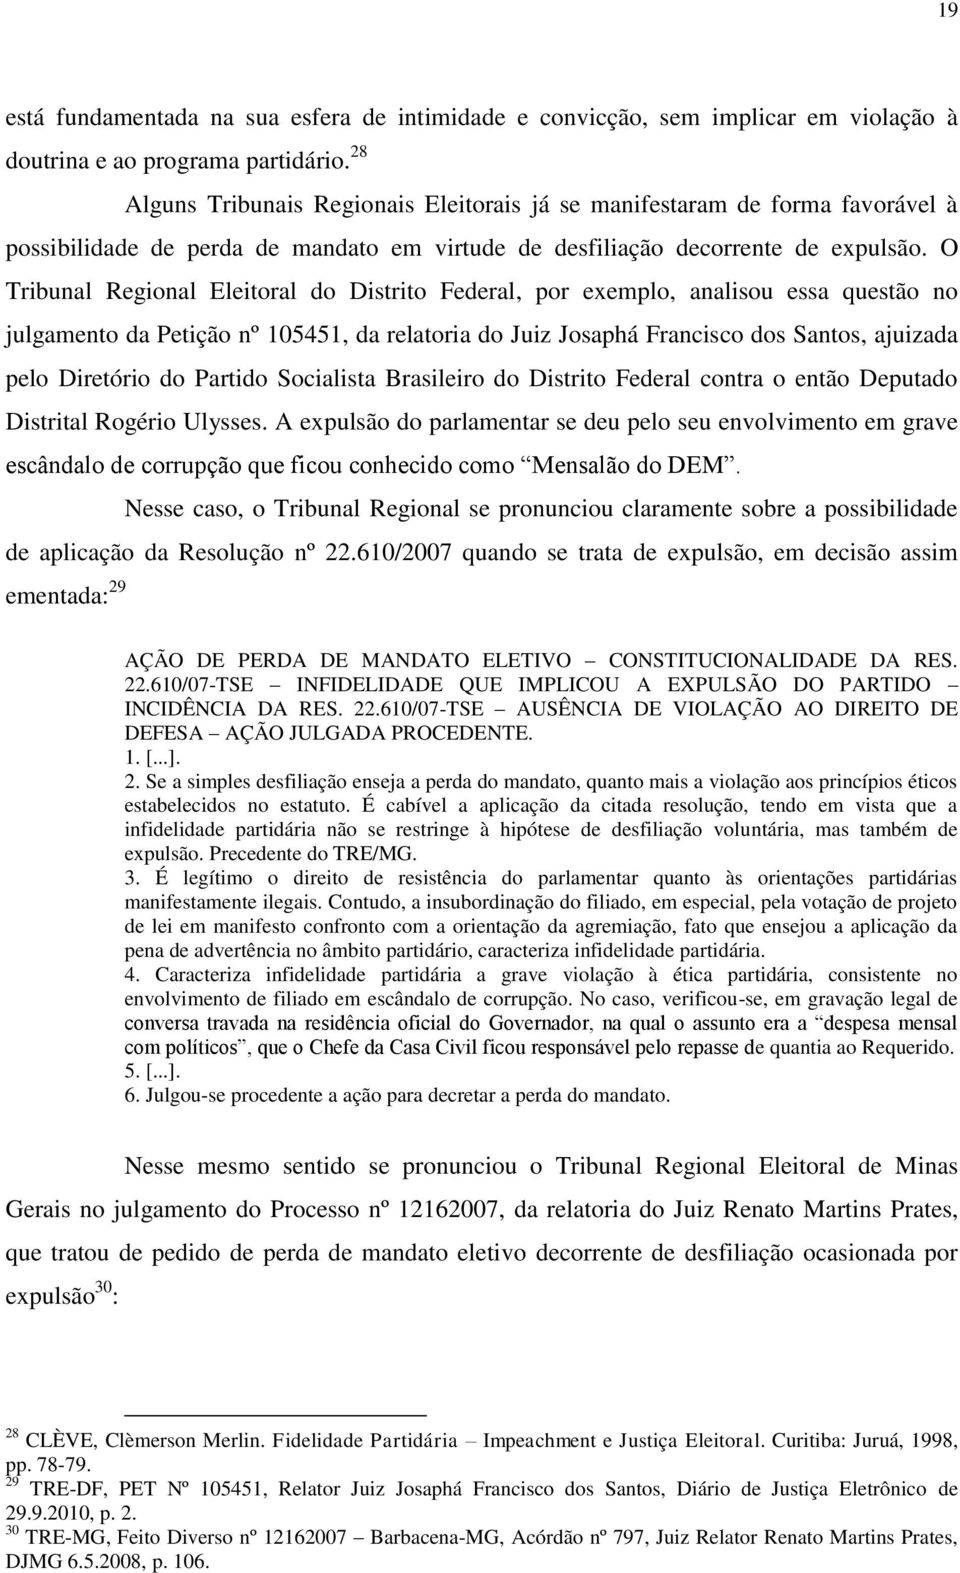 O Tribunal Regional Eleitoral do Distrito Federal, por exemplo, analisou essa questão no julgamento da Petição nº 105451, da relatoria do Juiz Josaphá Francisco dos Santos, ajuizada pelo Diretório do